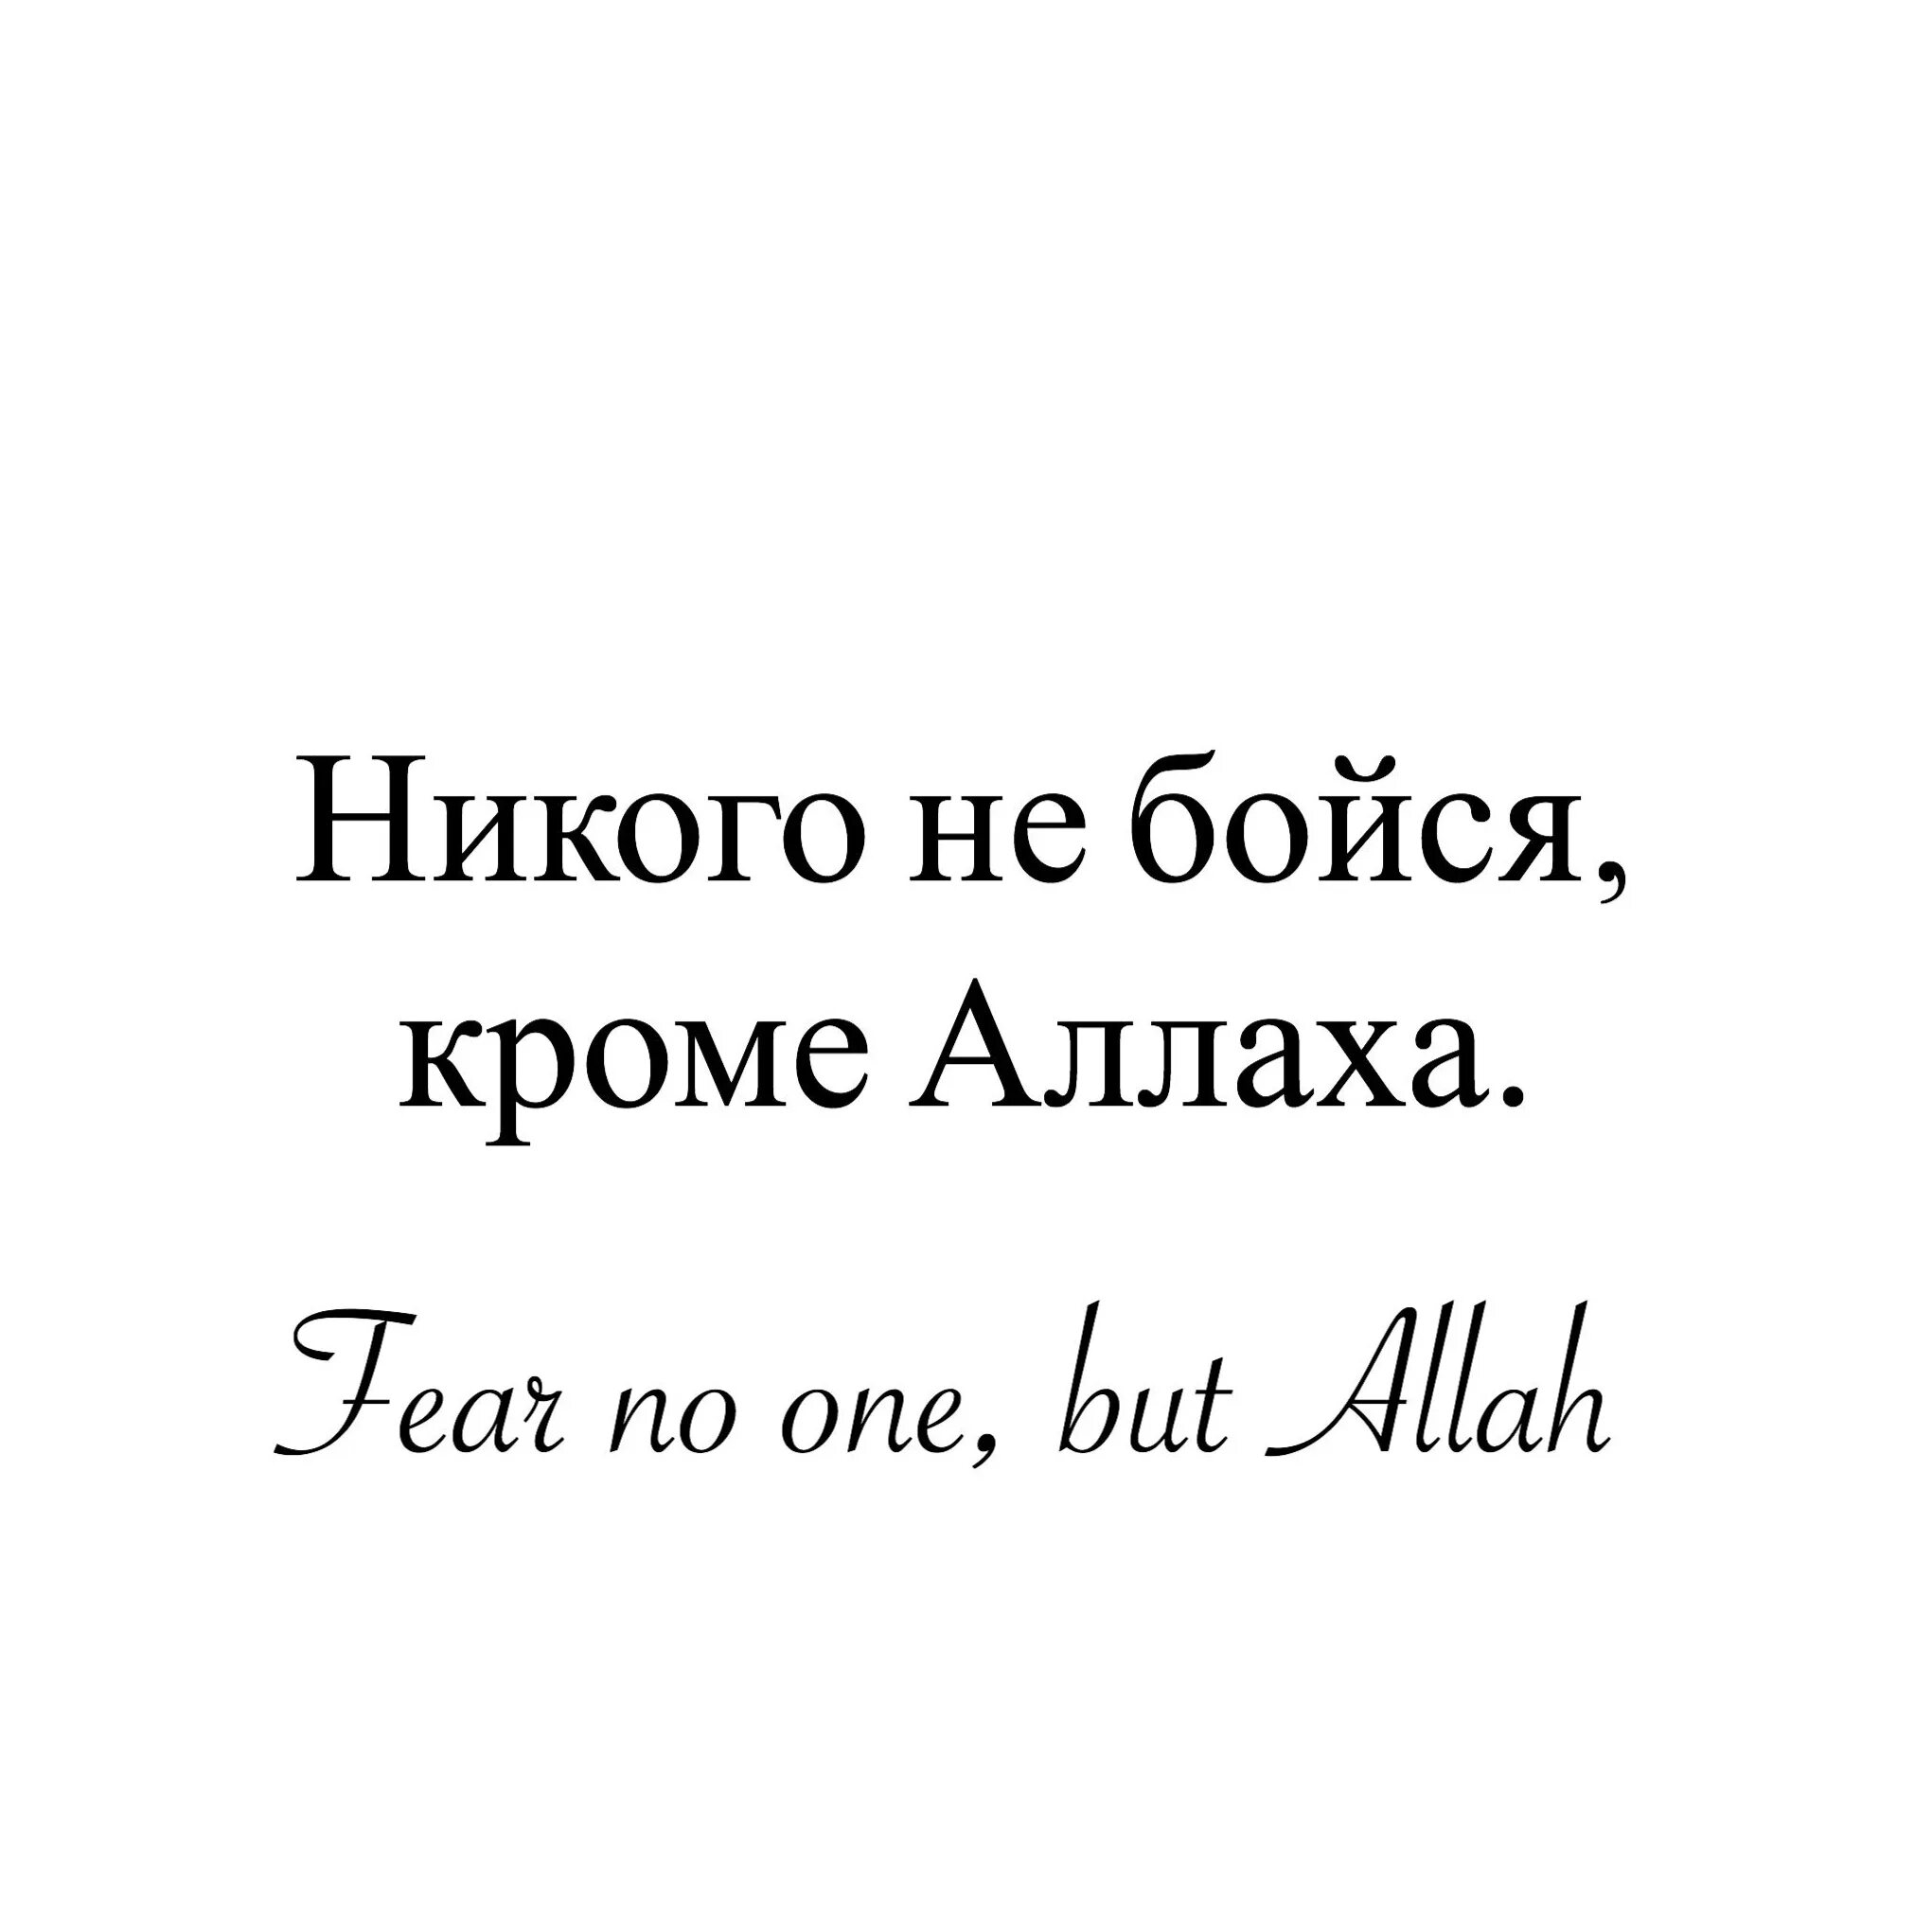 Никогда никого не бойся. Не бойся никого кроме Аллаха. Я никого не боюсь кроме Аллаха. Я не боюсь кроме Аллаха. Бойся Аллаха.